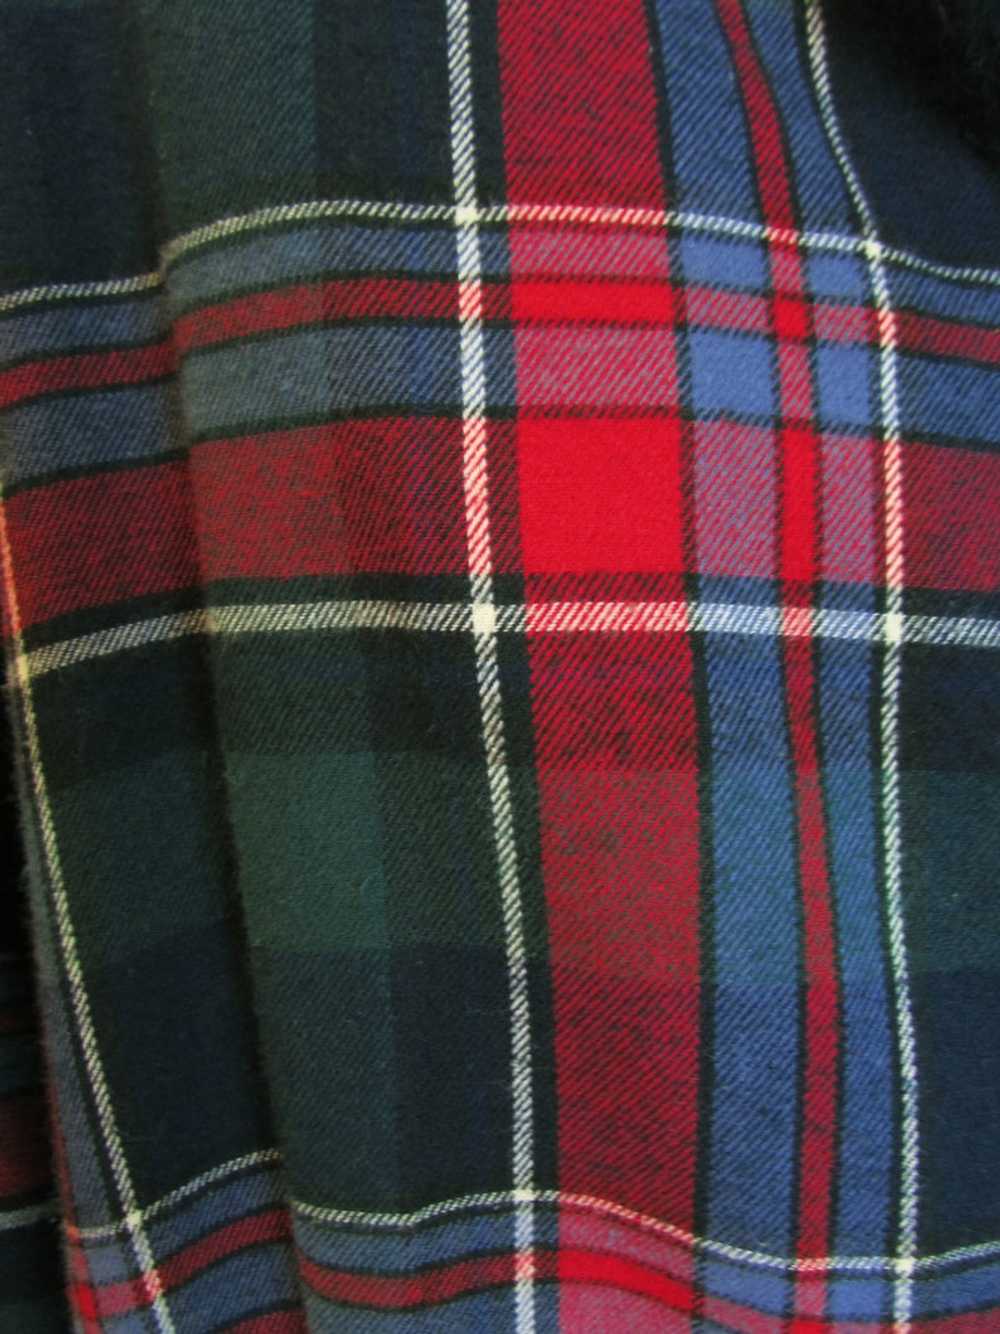 COTTON PLAID flannel dress scotch plaid maxi dres… - image 5